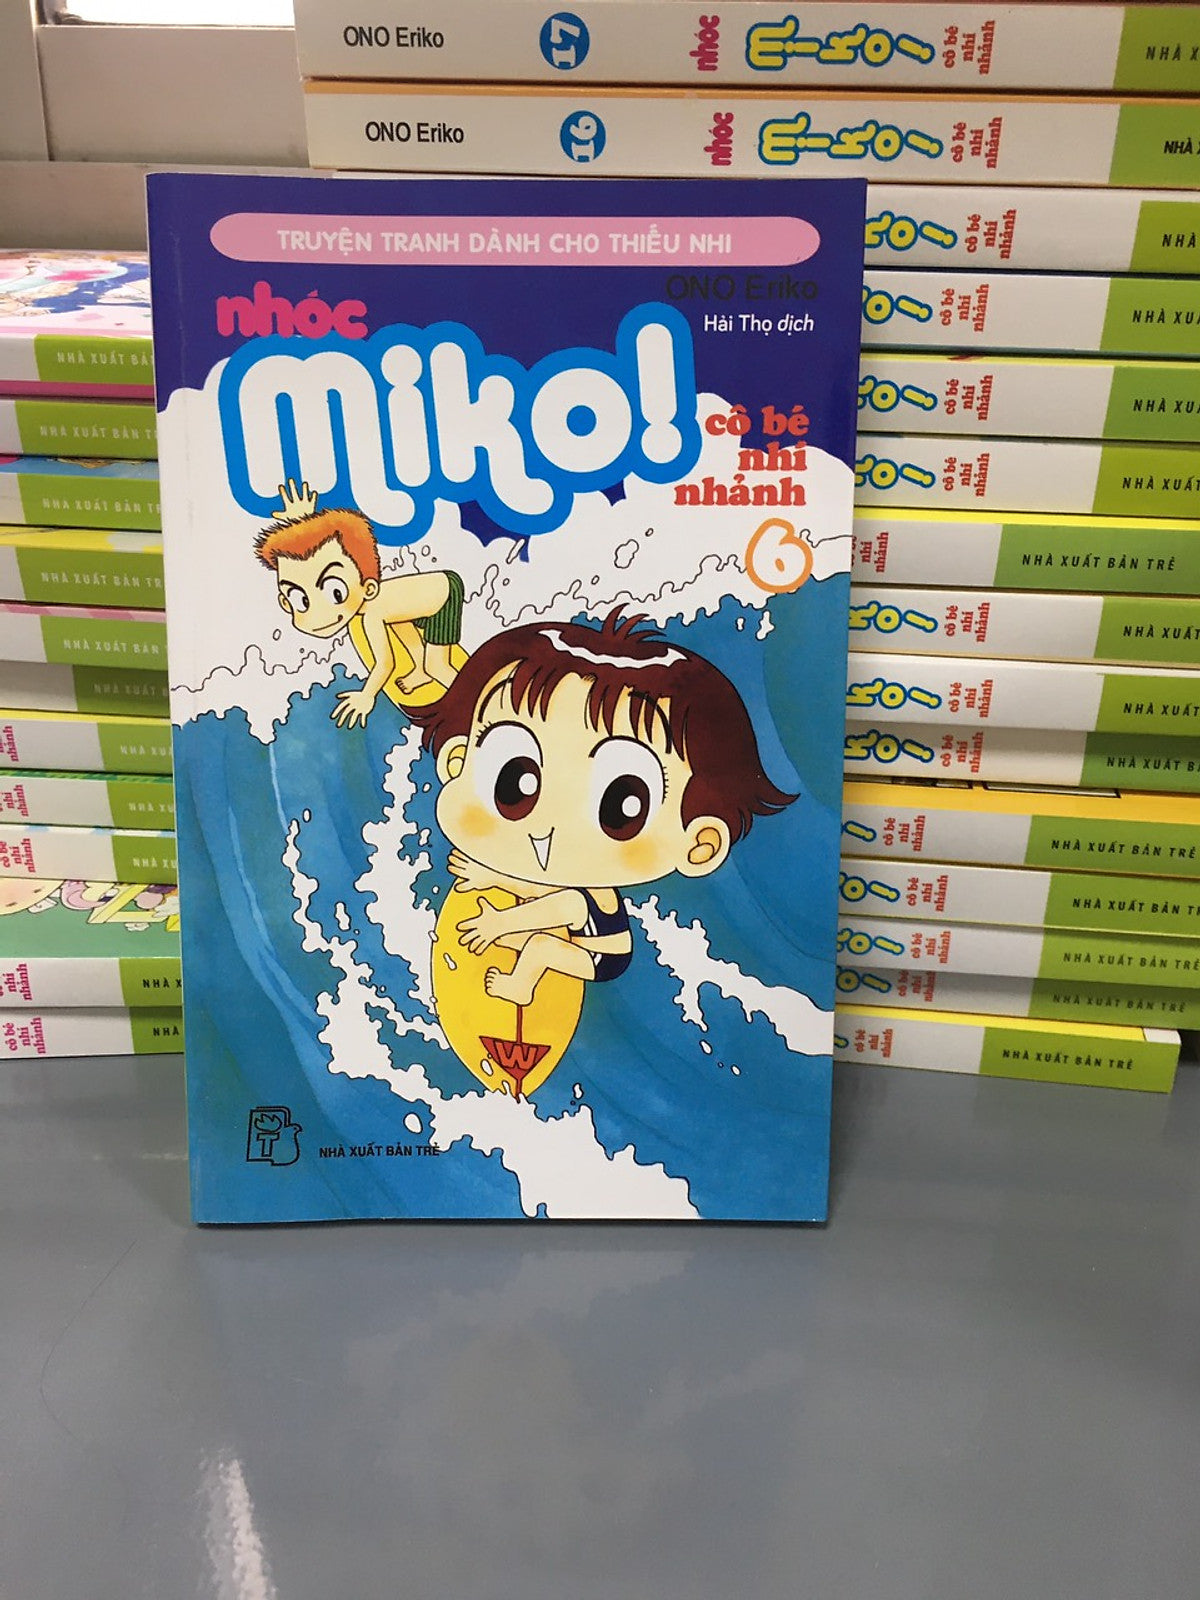 Nhóc Miko! Cô Bé Nhí Nhảnh - Tập 6